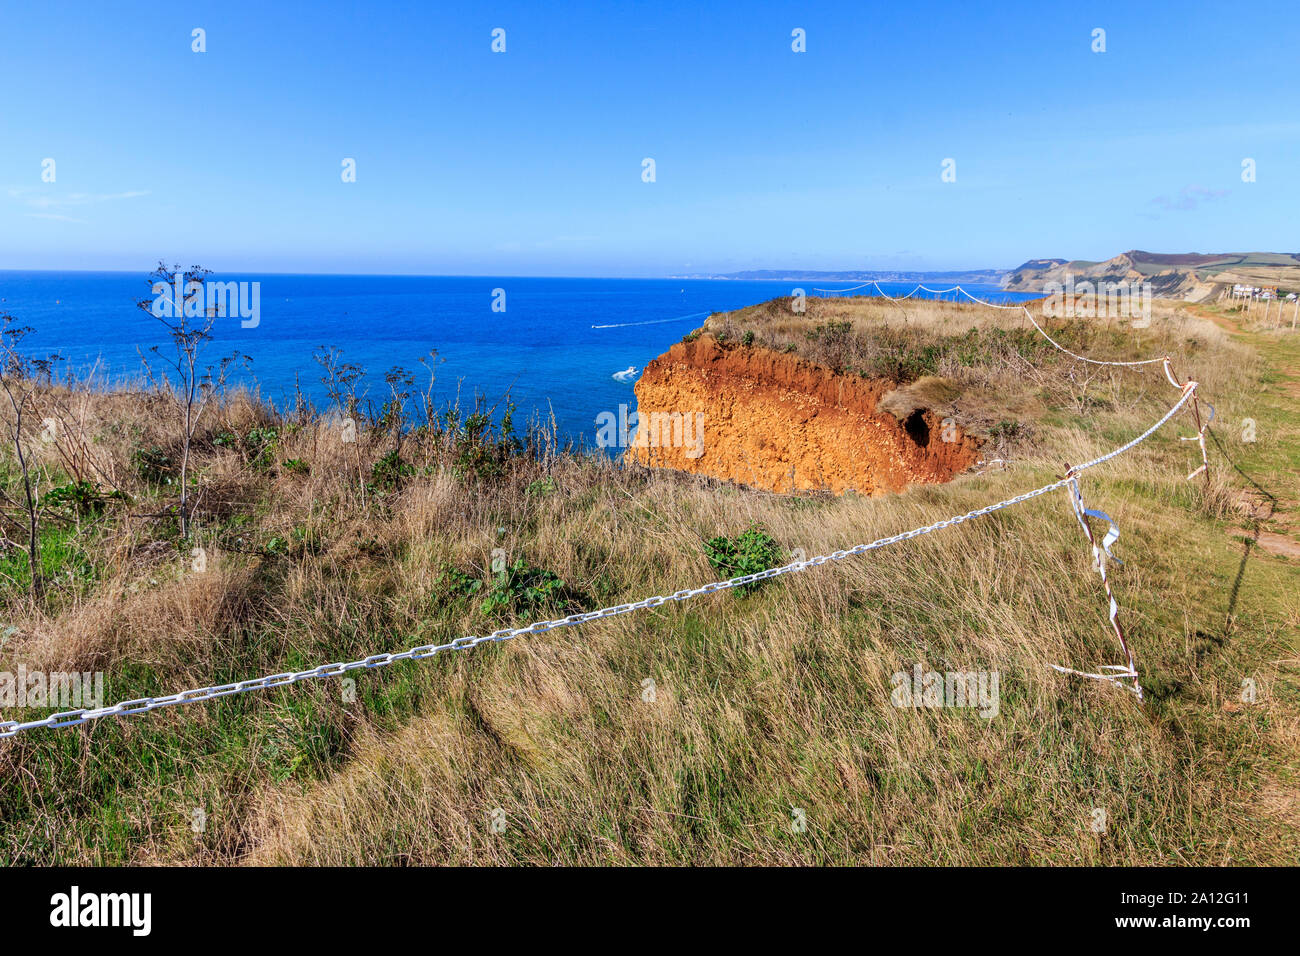 Cliff cade spazio cintato pericolo, West Bay resort costa, Jurassic Coast, sbriciolare scogliere di arenaria,sito UNESCO, Dorset, England, Regno Unito, GB Foto Stock